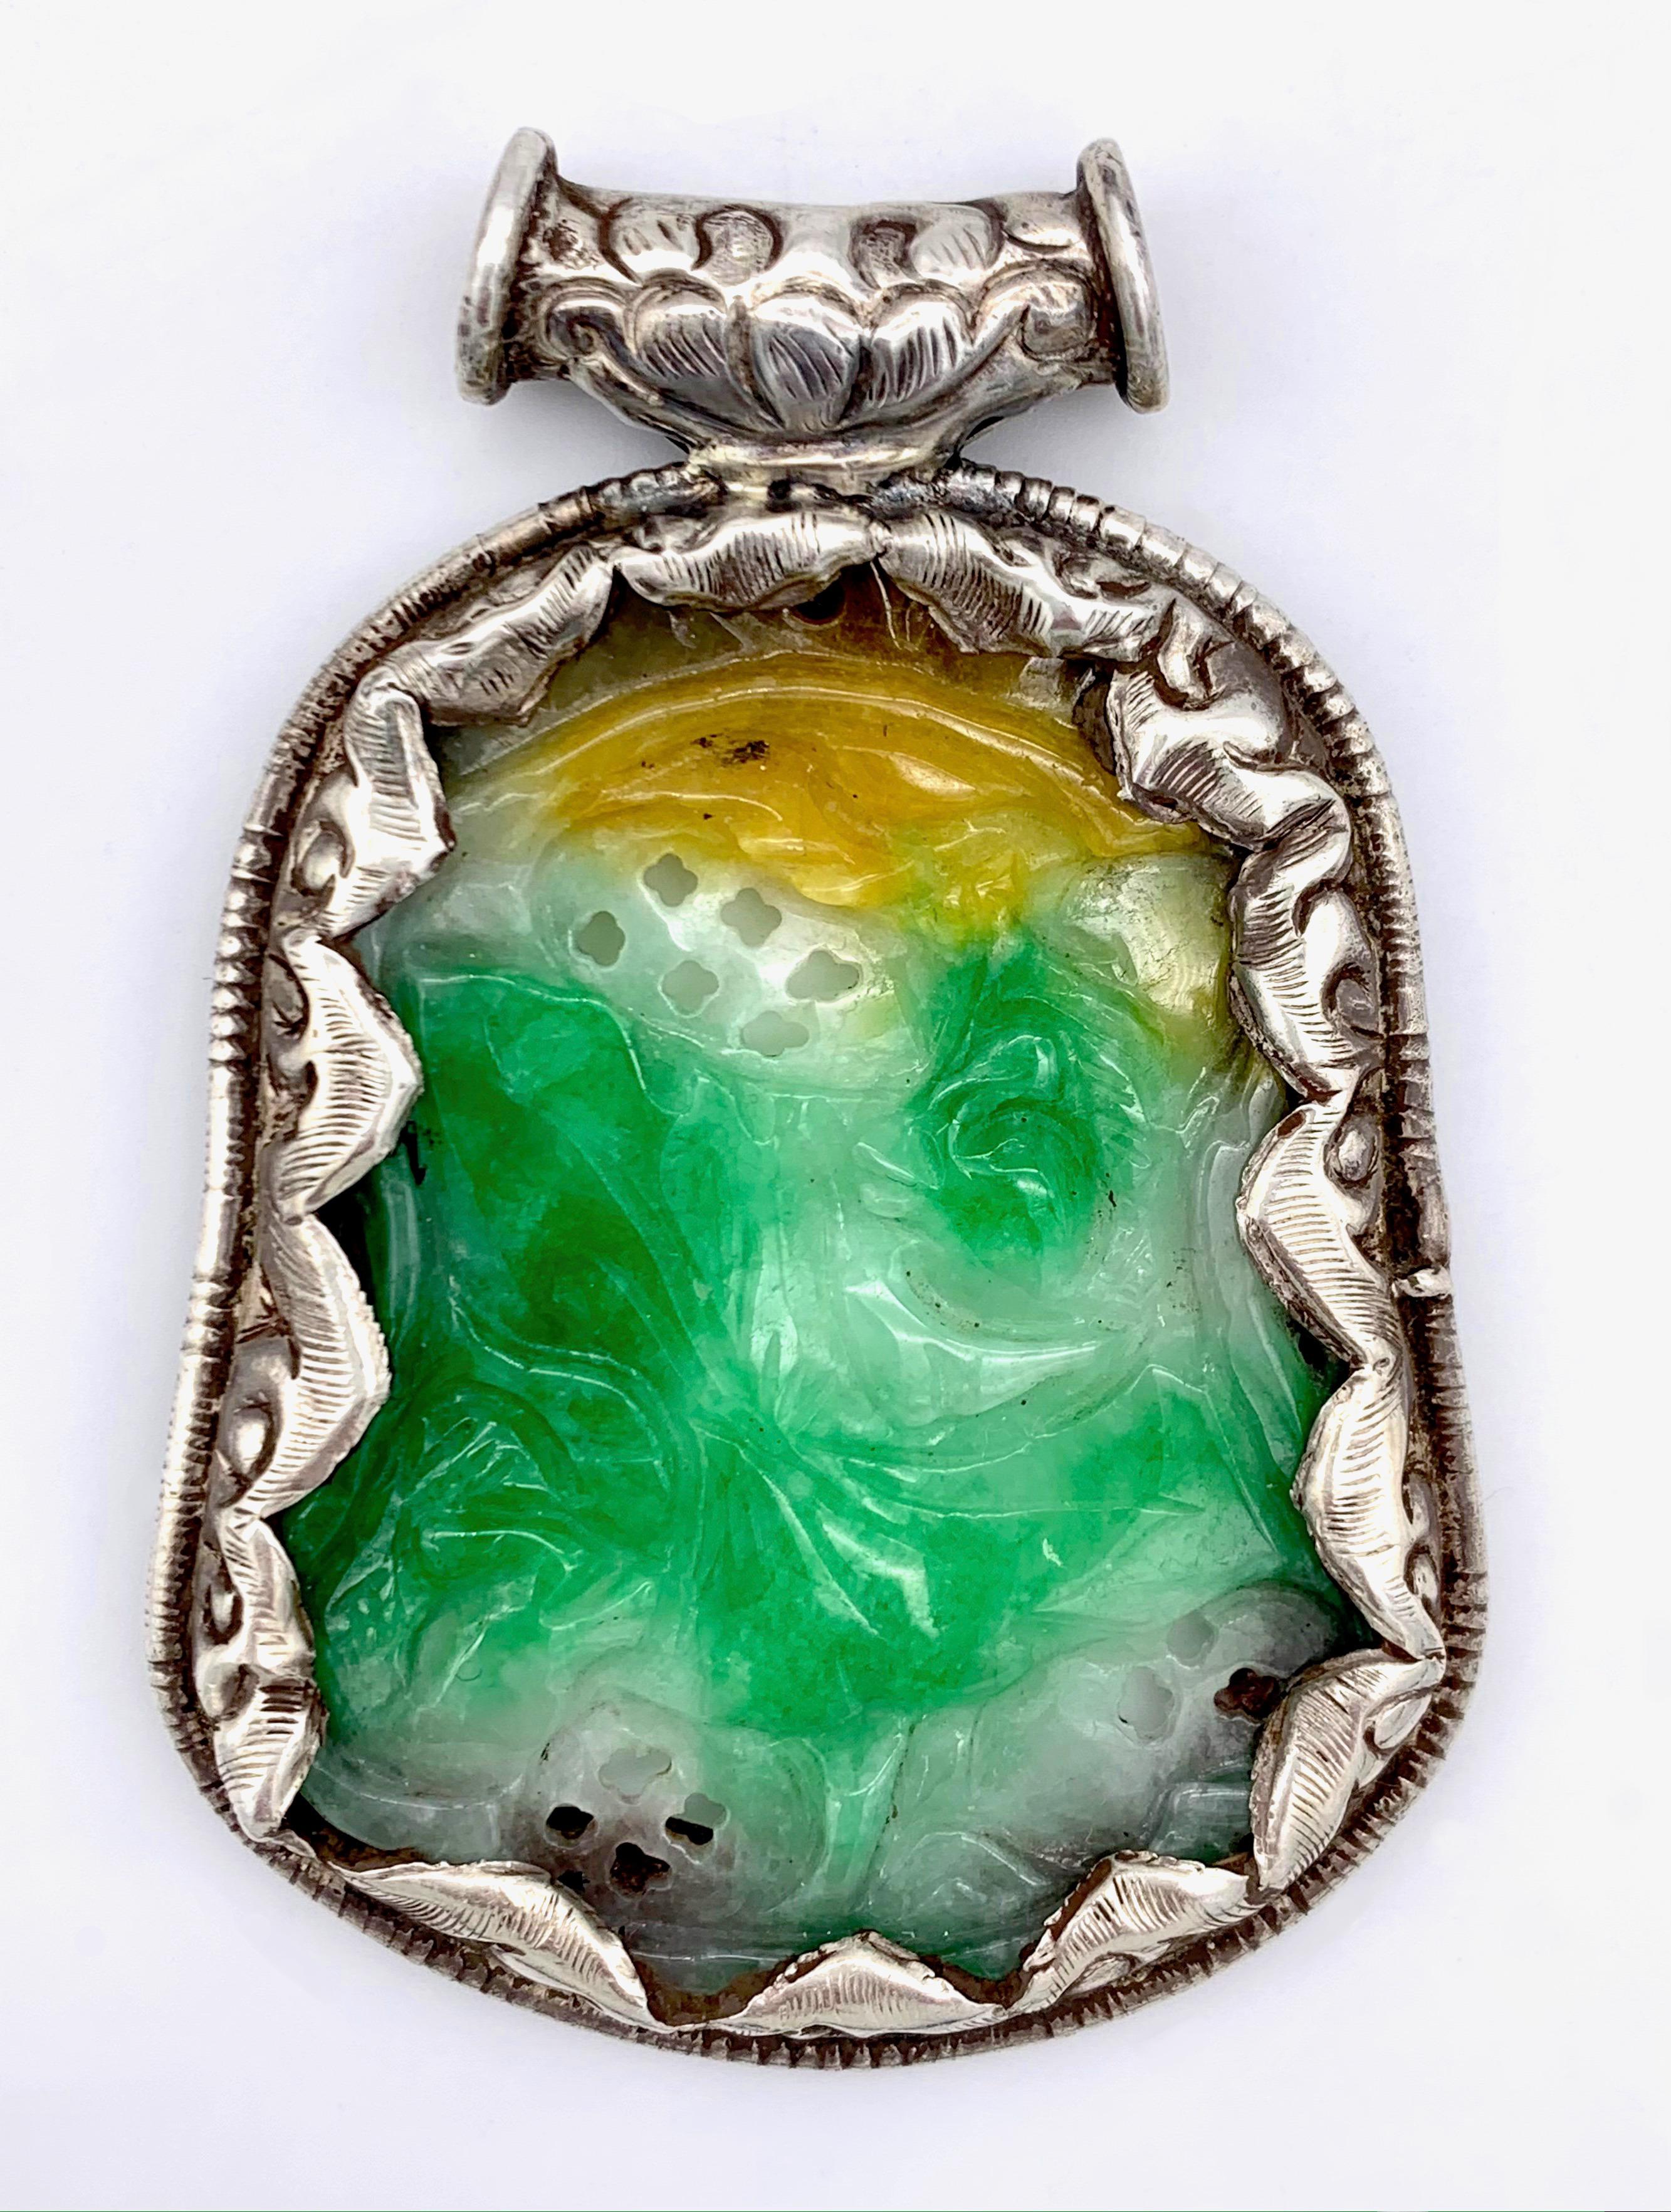 Cette magnifique pièce de jade sculpté est sertie dans une monture en argent très élaborée. Le jade est sculpté sur les deux faces.
Ce bijou a été exécuté vers 1880.  